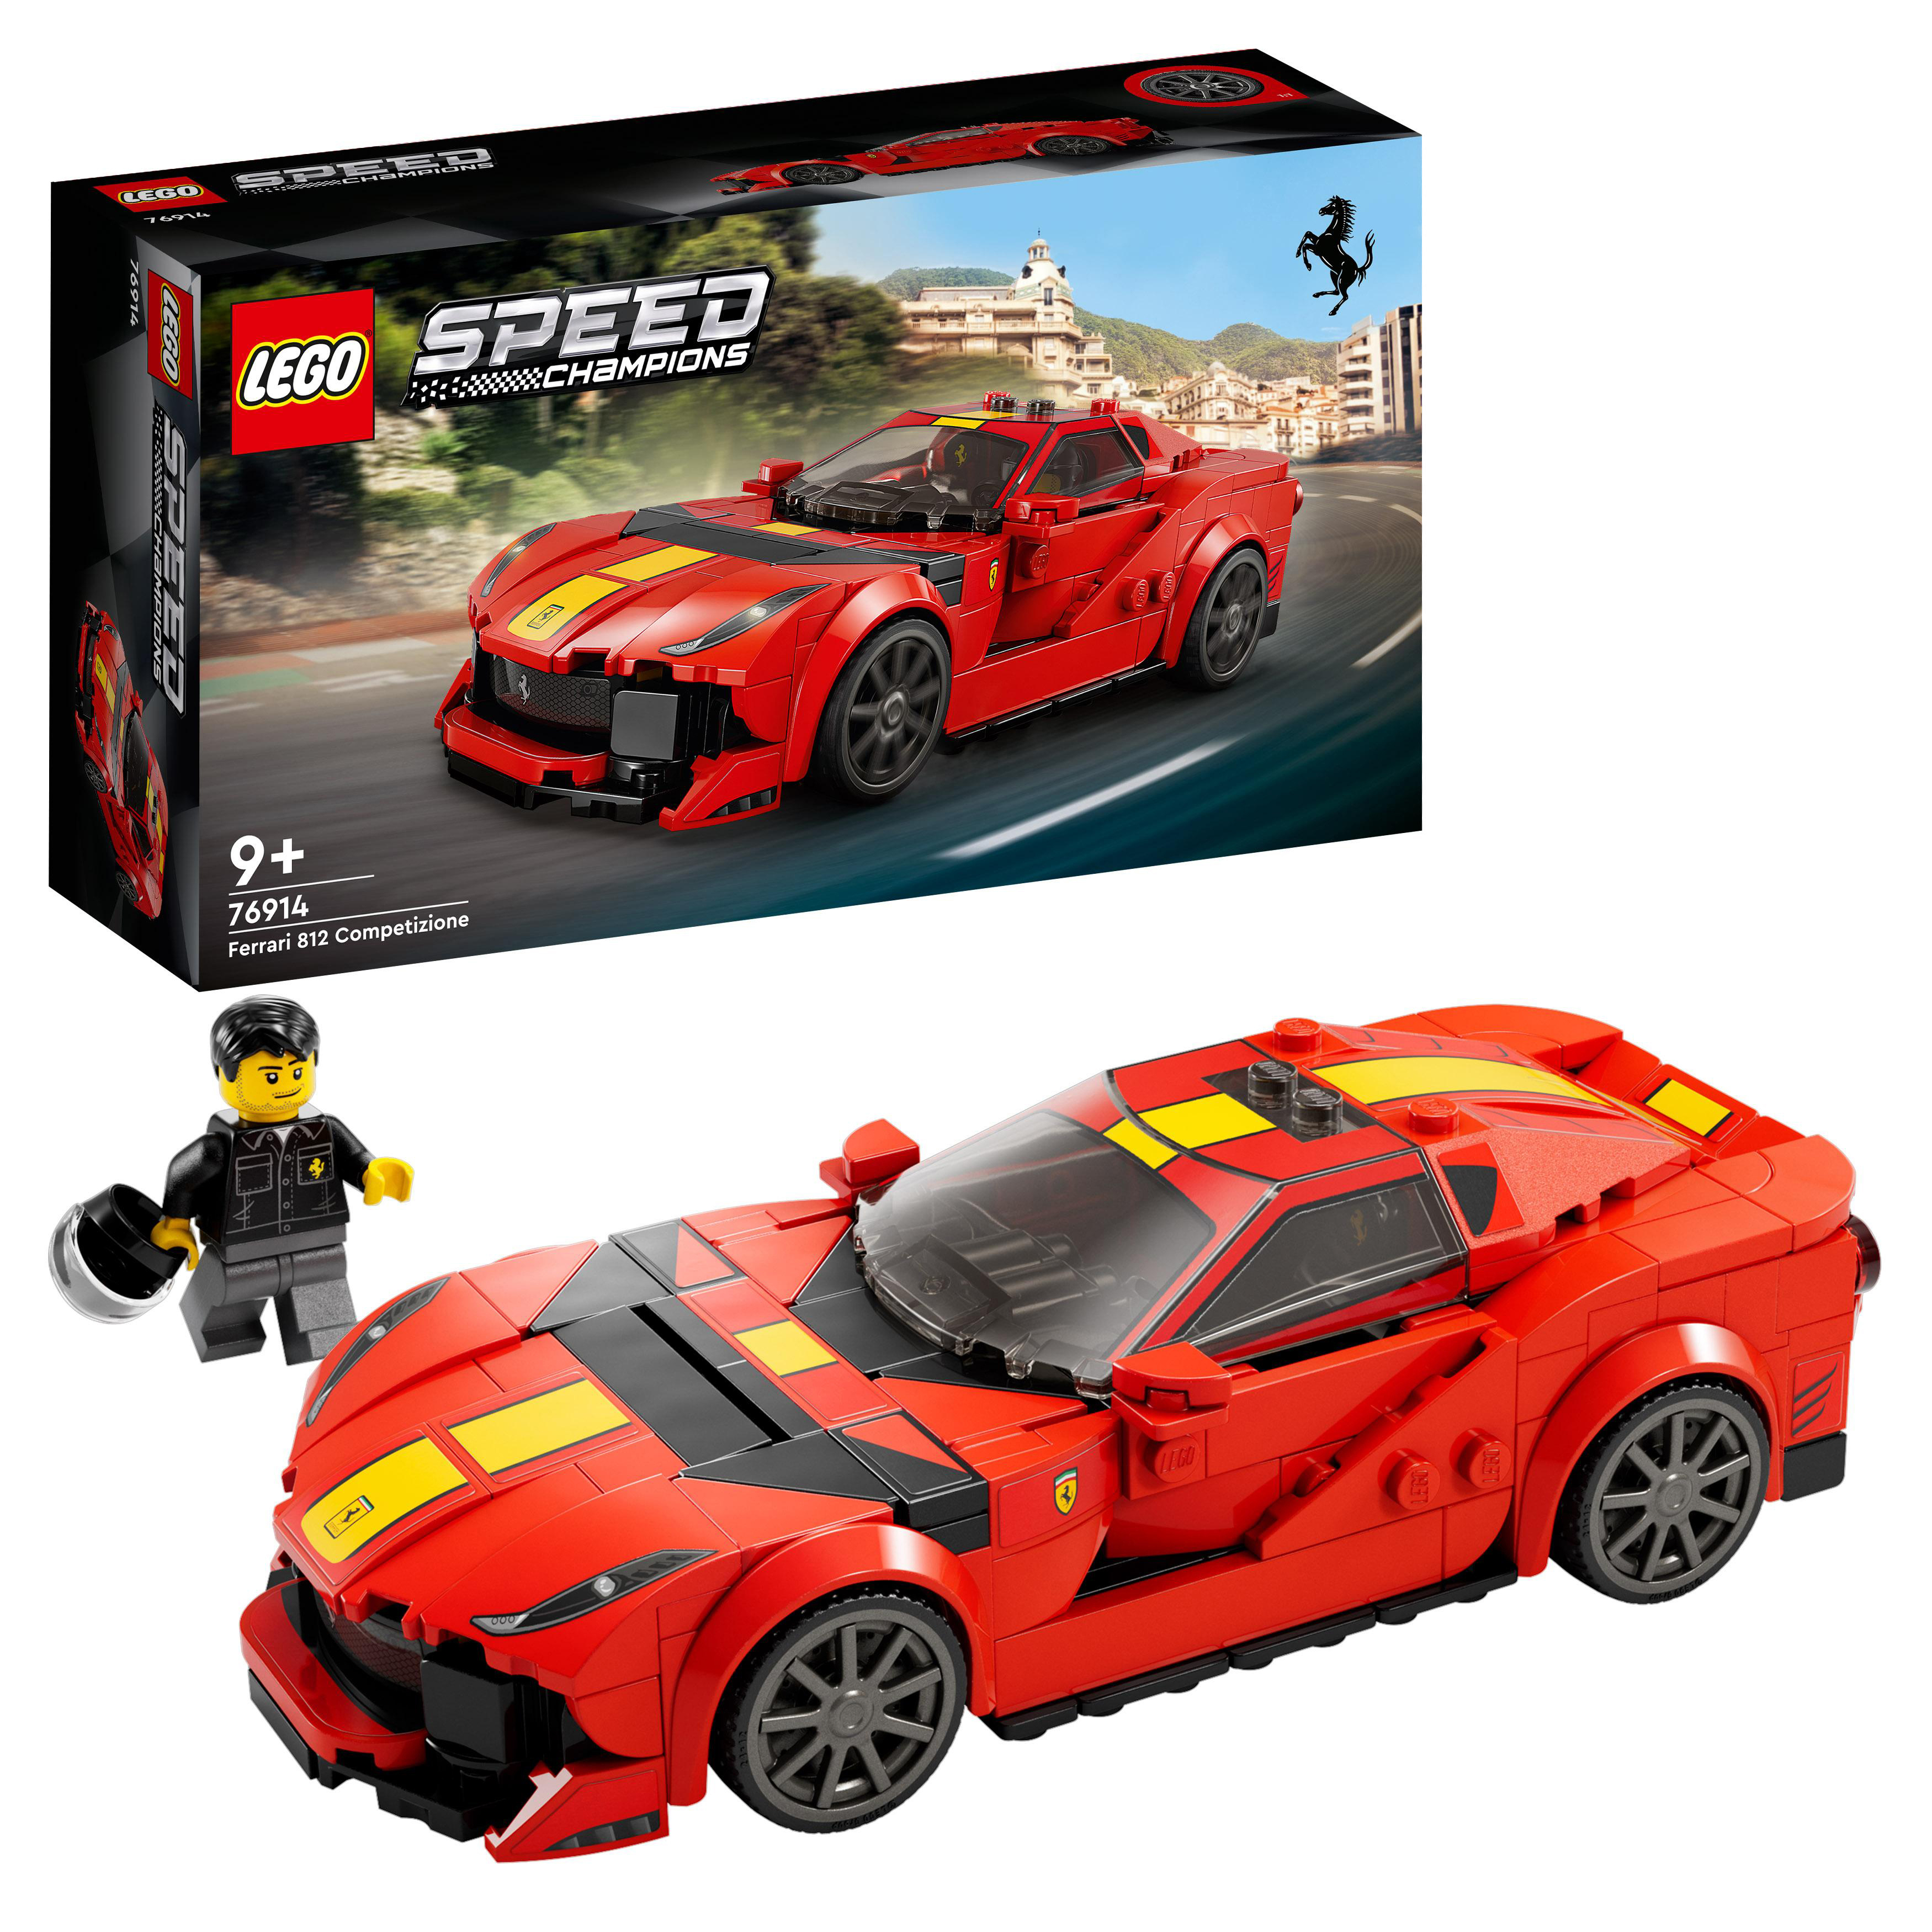 LEGO Speed Champions 76914 Bausatz, Ferrari Competizione 812 Mehrfarbig